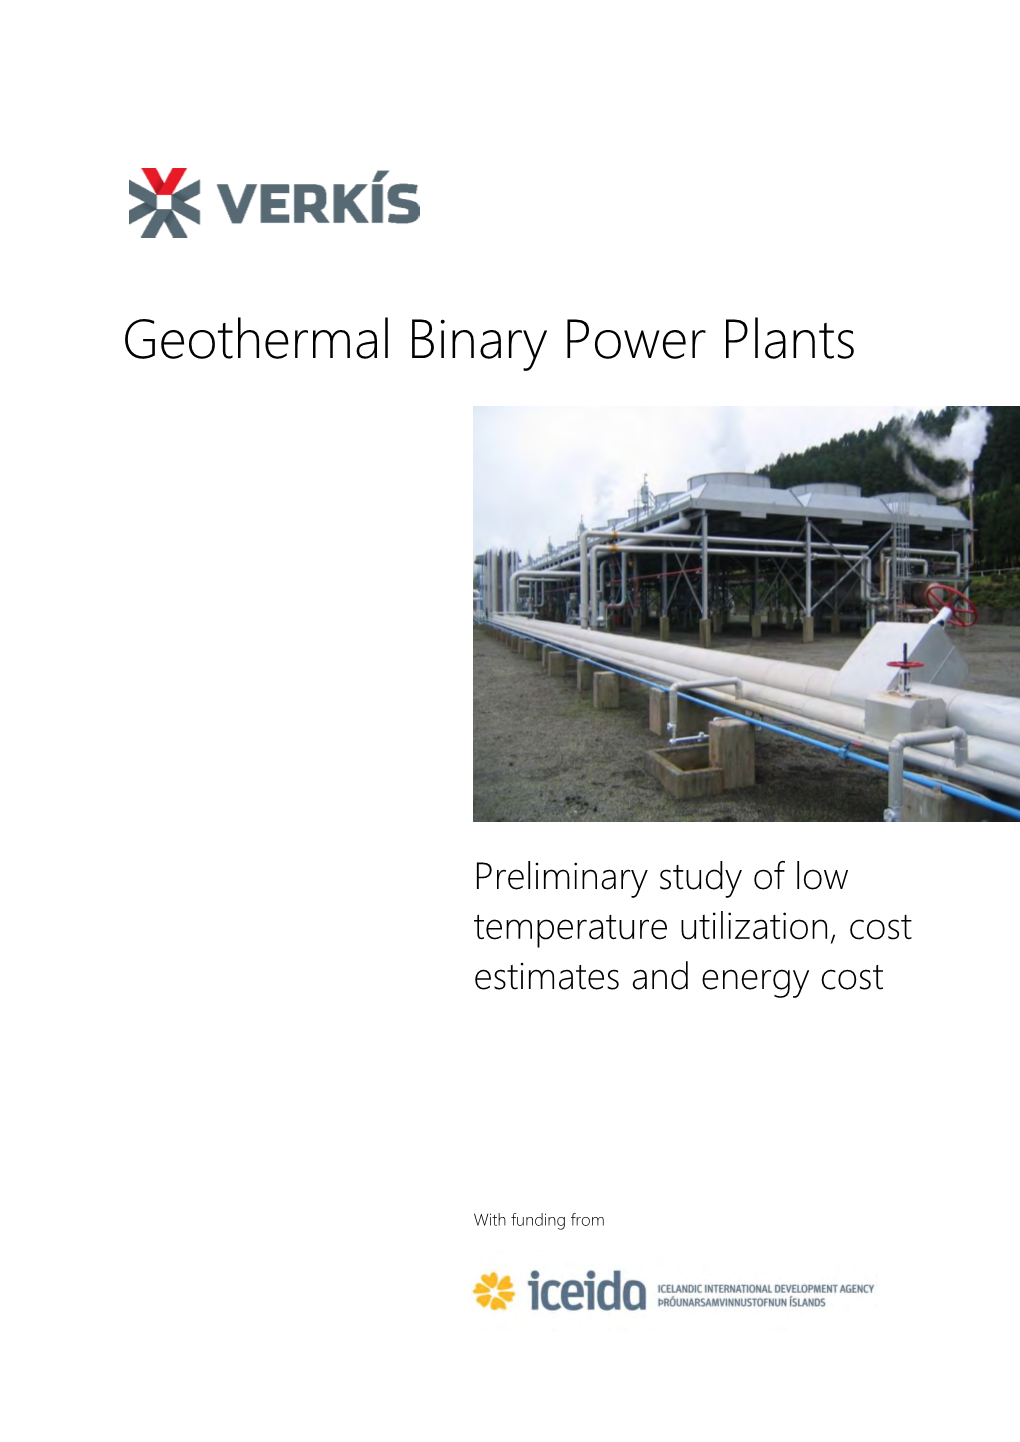 Geothermal Binary Plants by Verkis